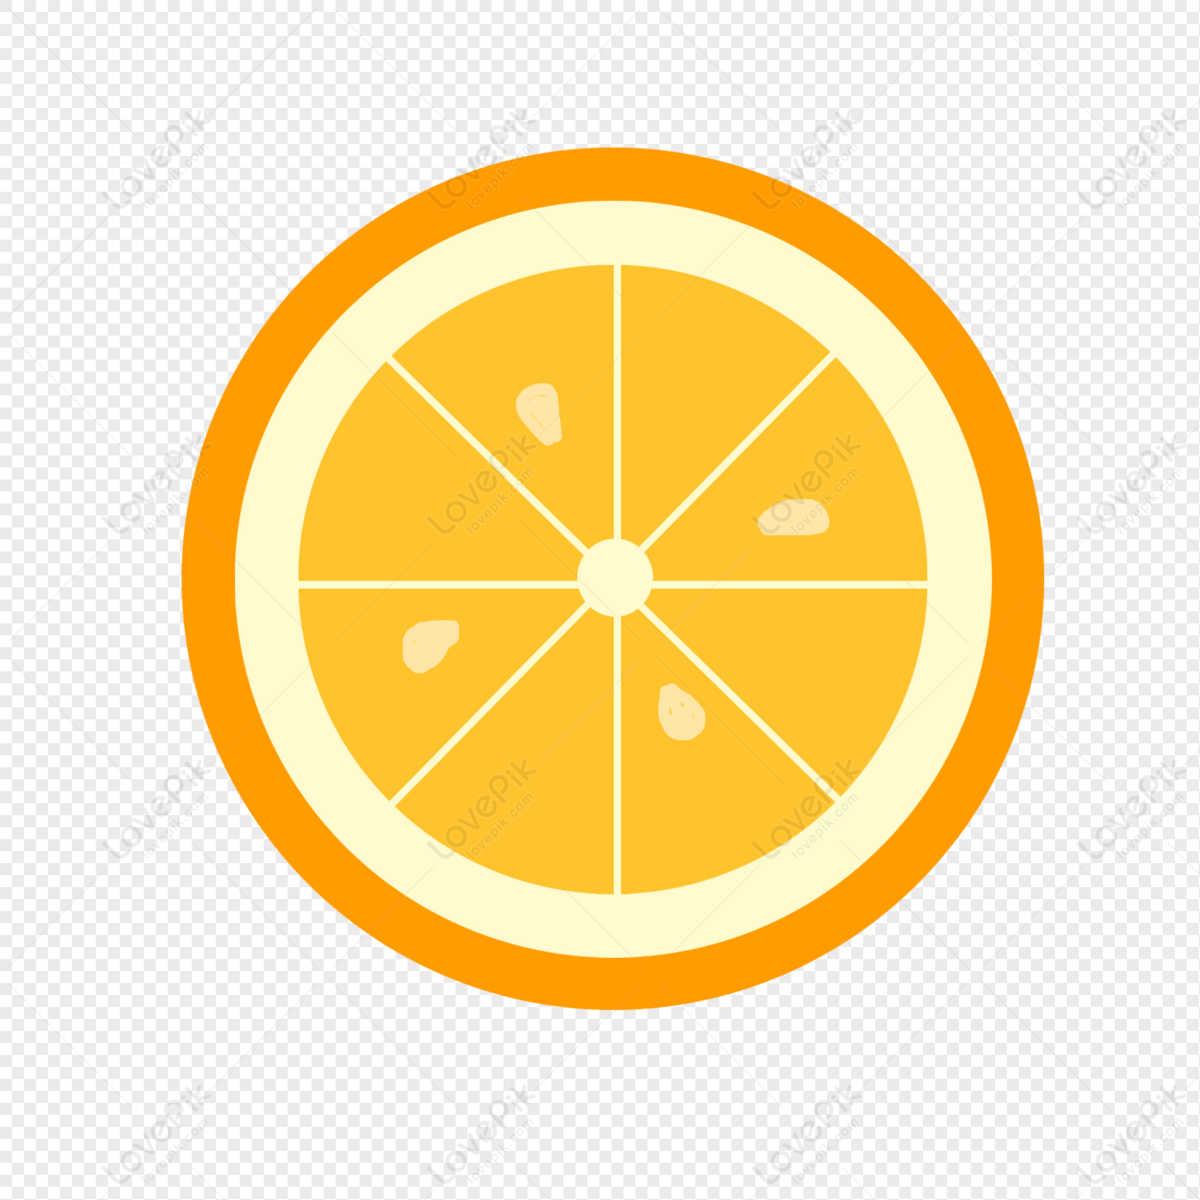 Giữa những loại trái cây, quả cam luôn là một sự lựa chọn phổ biến. Hãy xem bức vẽ quả cam tuyệt đẹp bật mí về những sắc màu tinh tế của nó.